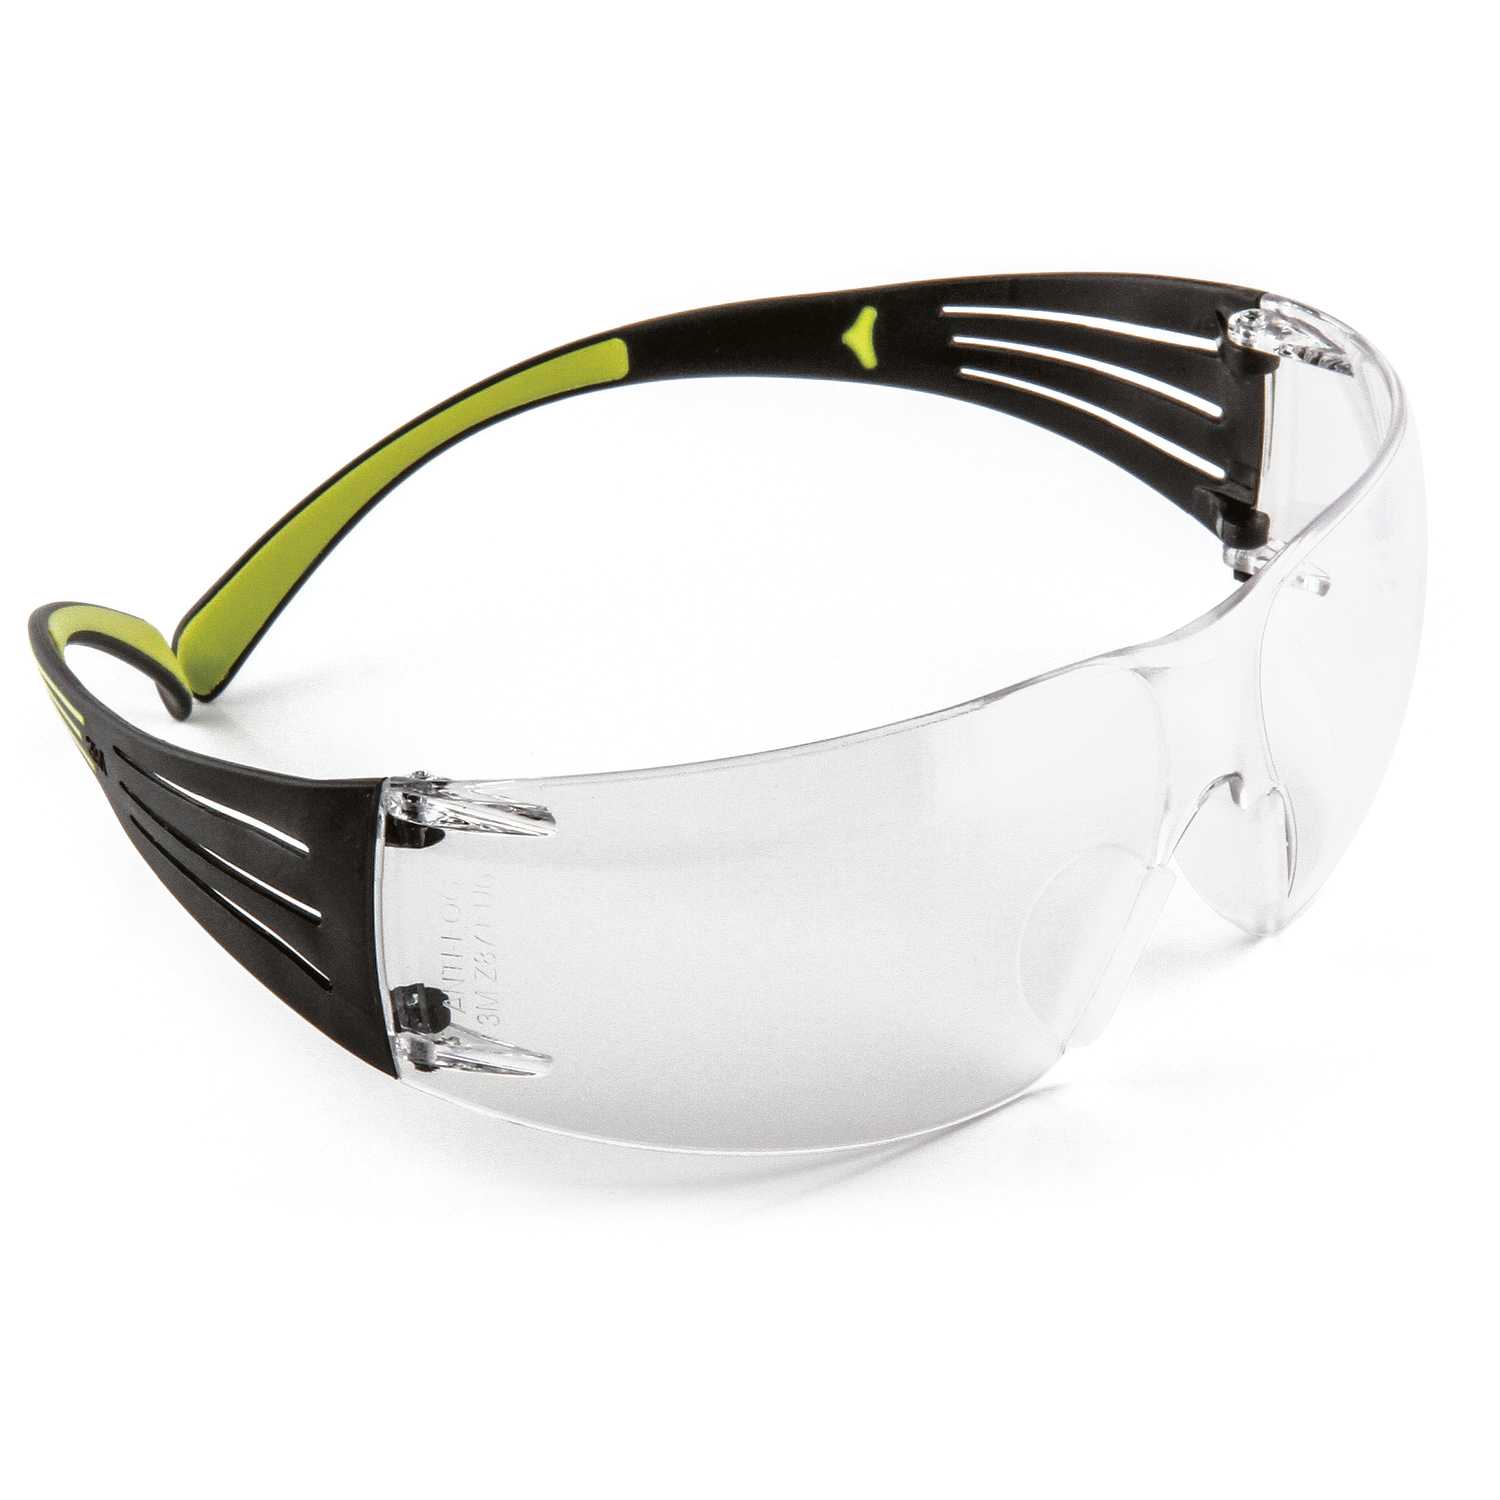 3M SecureFit AntiFog Safety Glasses Clear Lens Black/Green Frame 1 pc